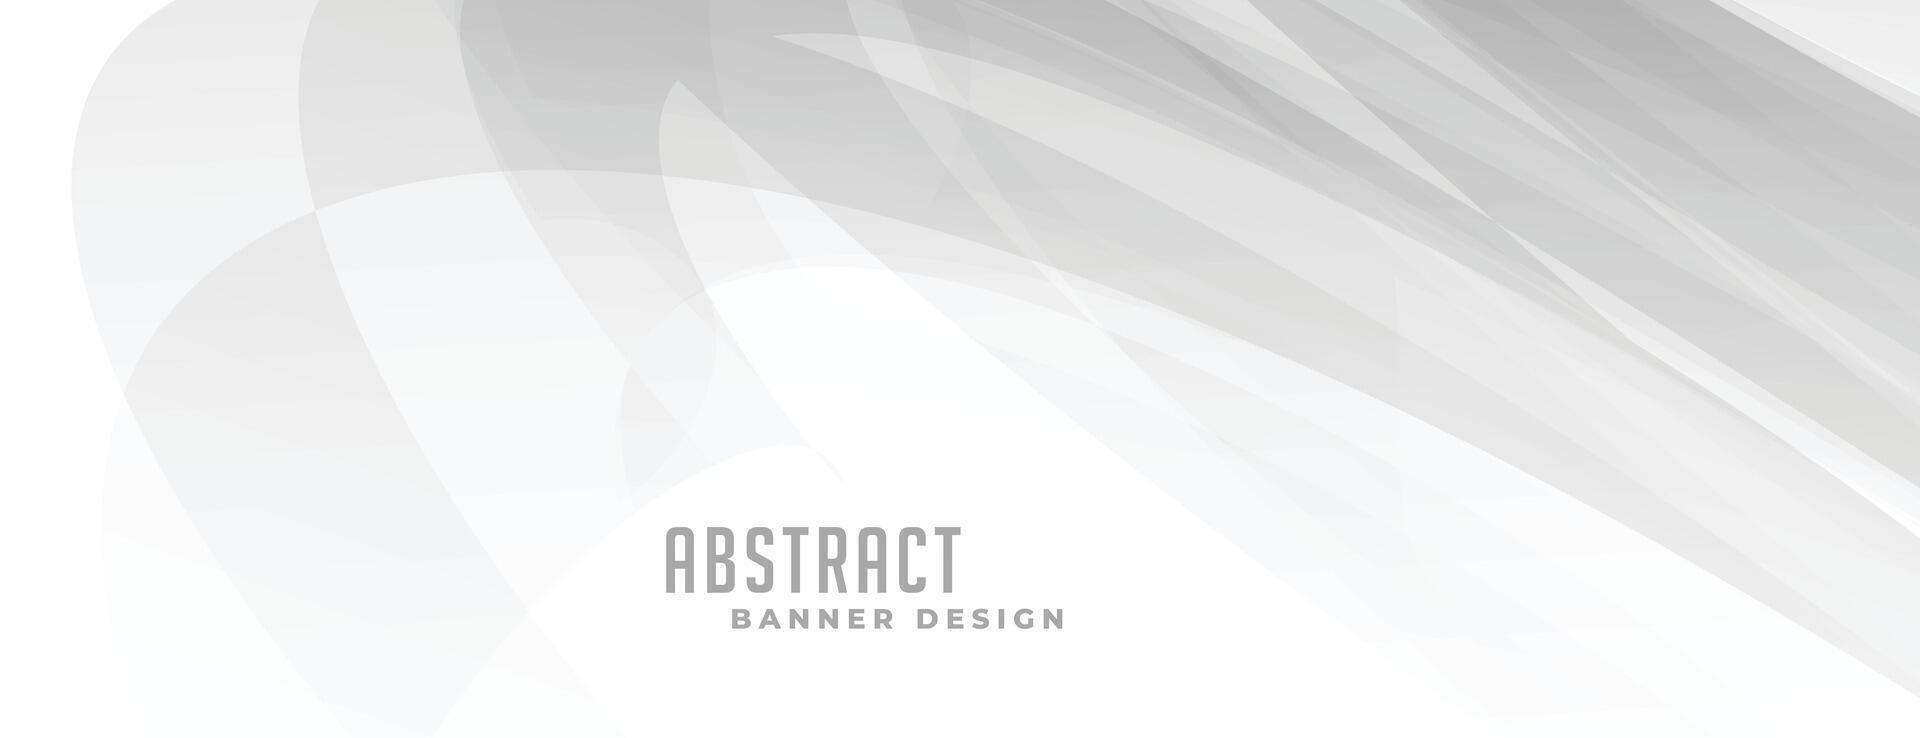 abstract wit banier met grijs lijnen ontwerp vector